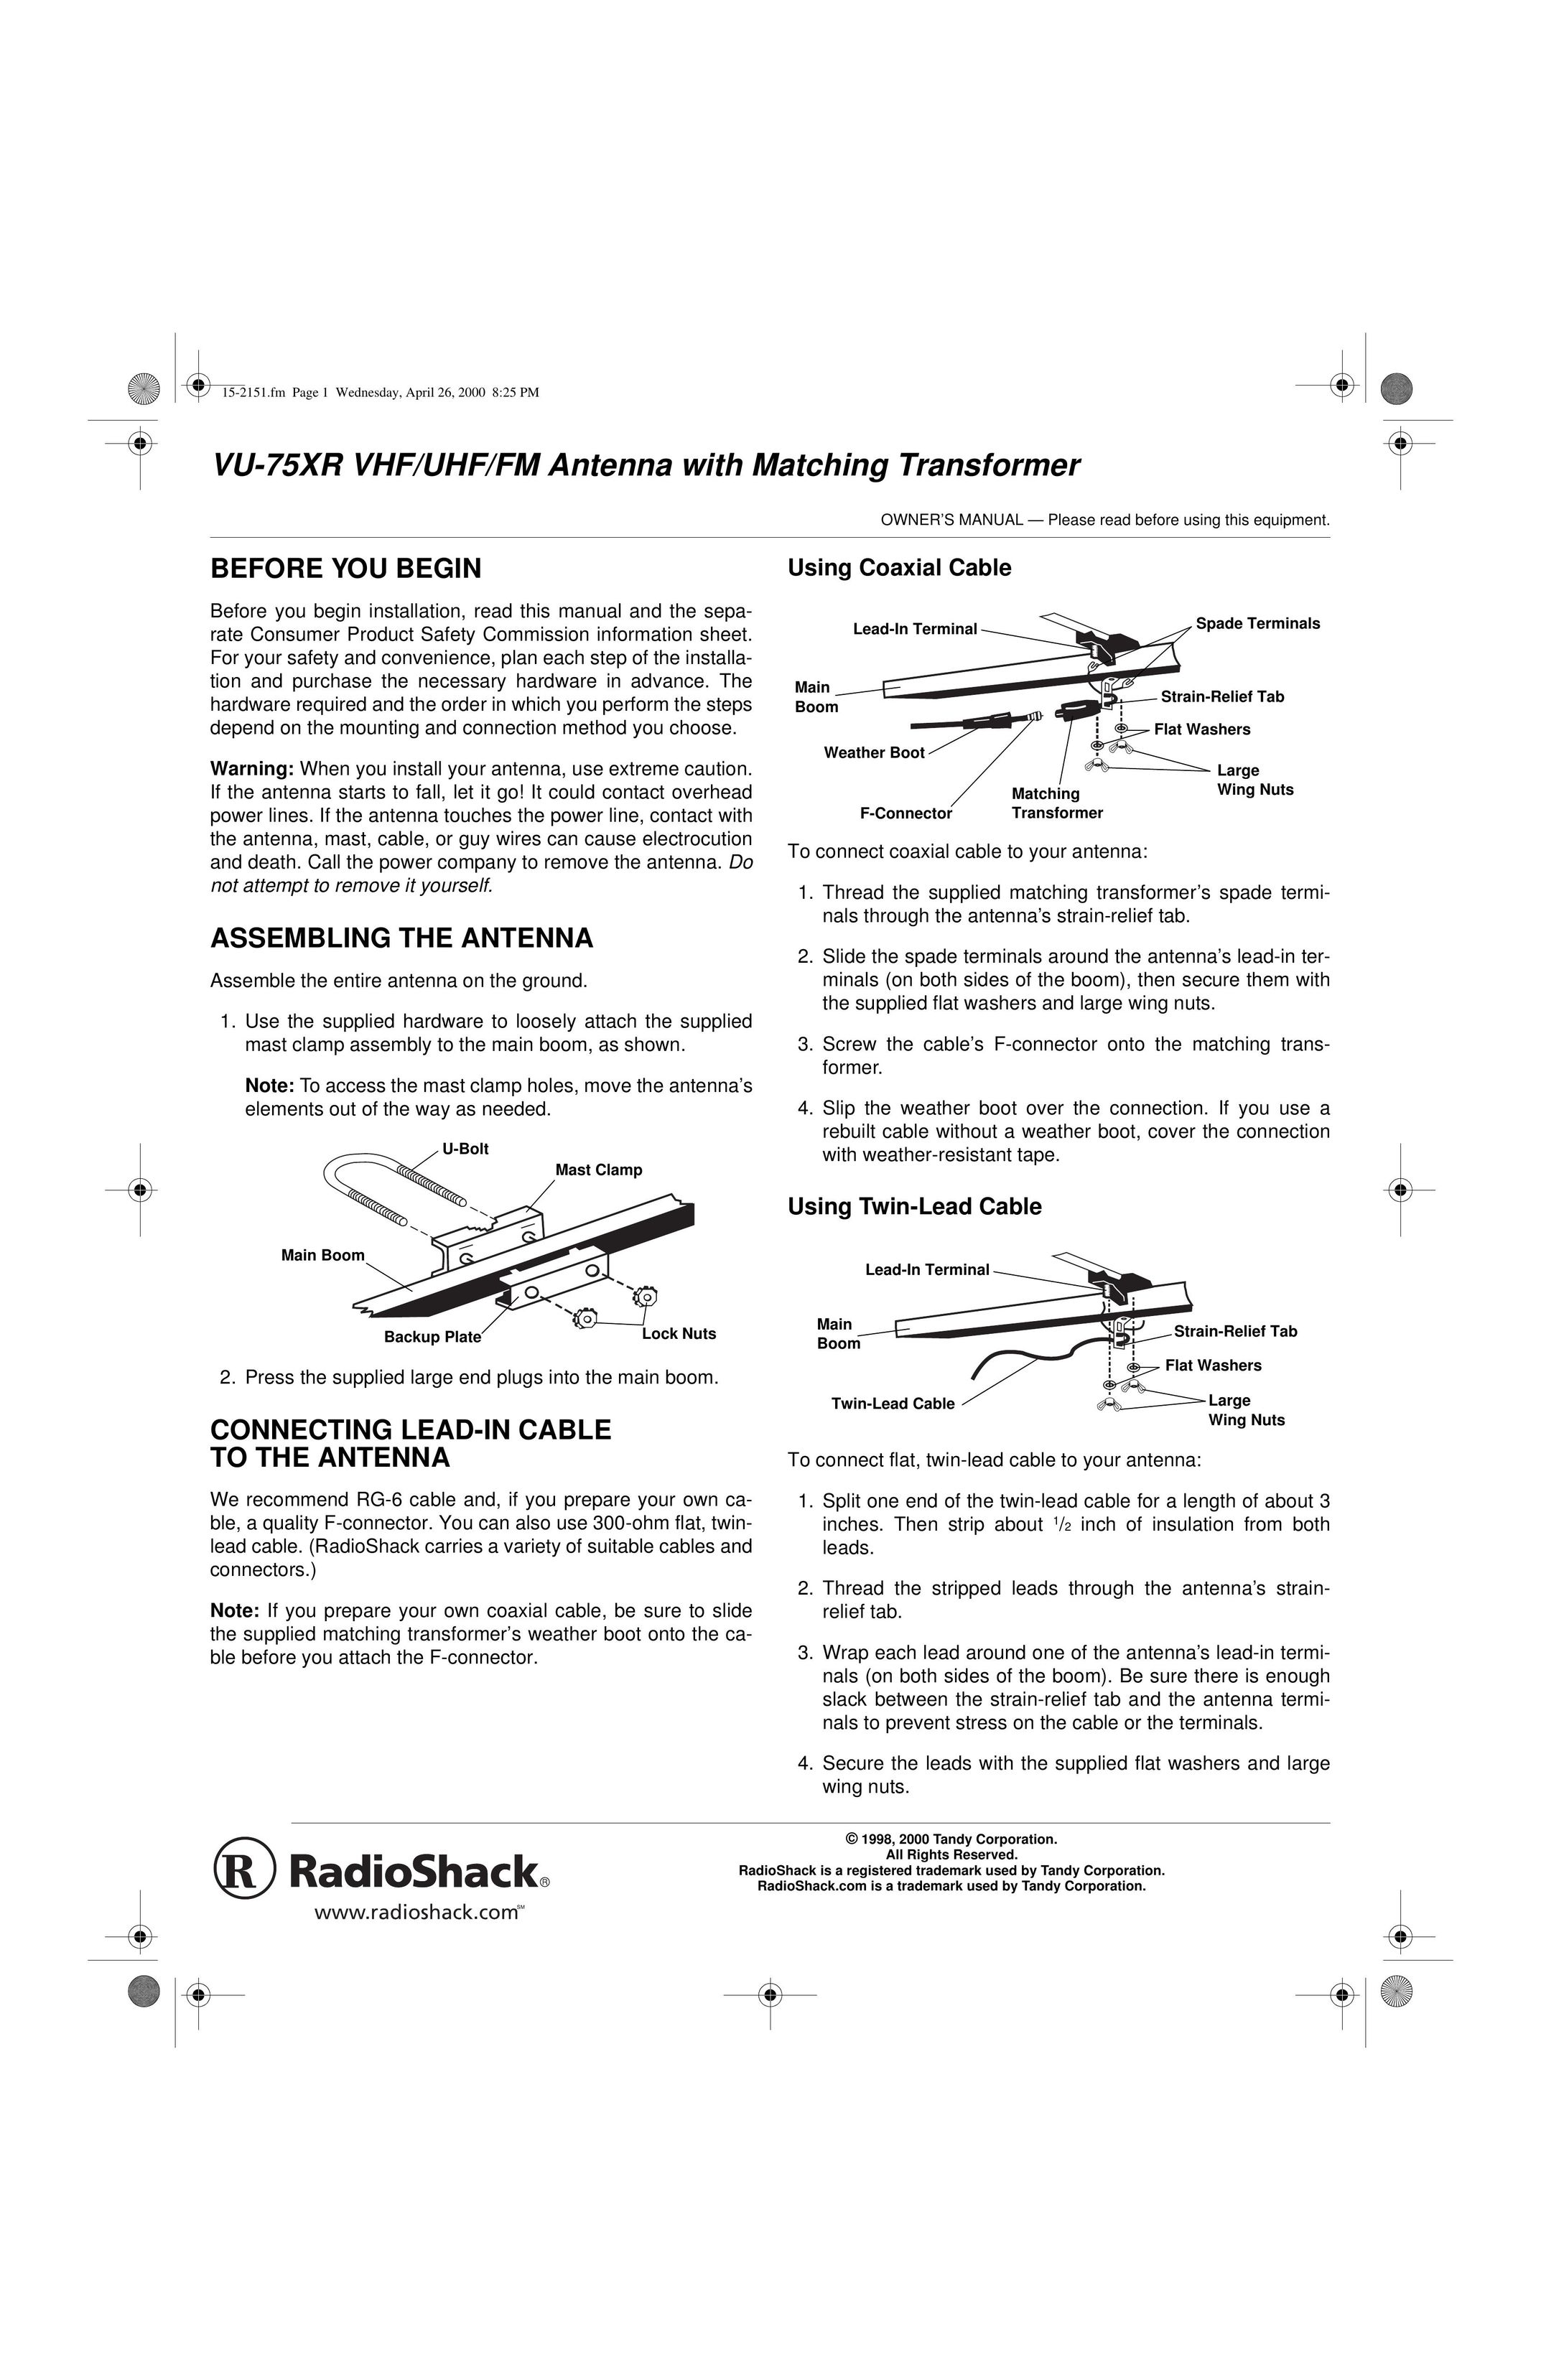 Radio Shack VU-75XR TV Antenna User Manual